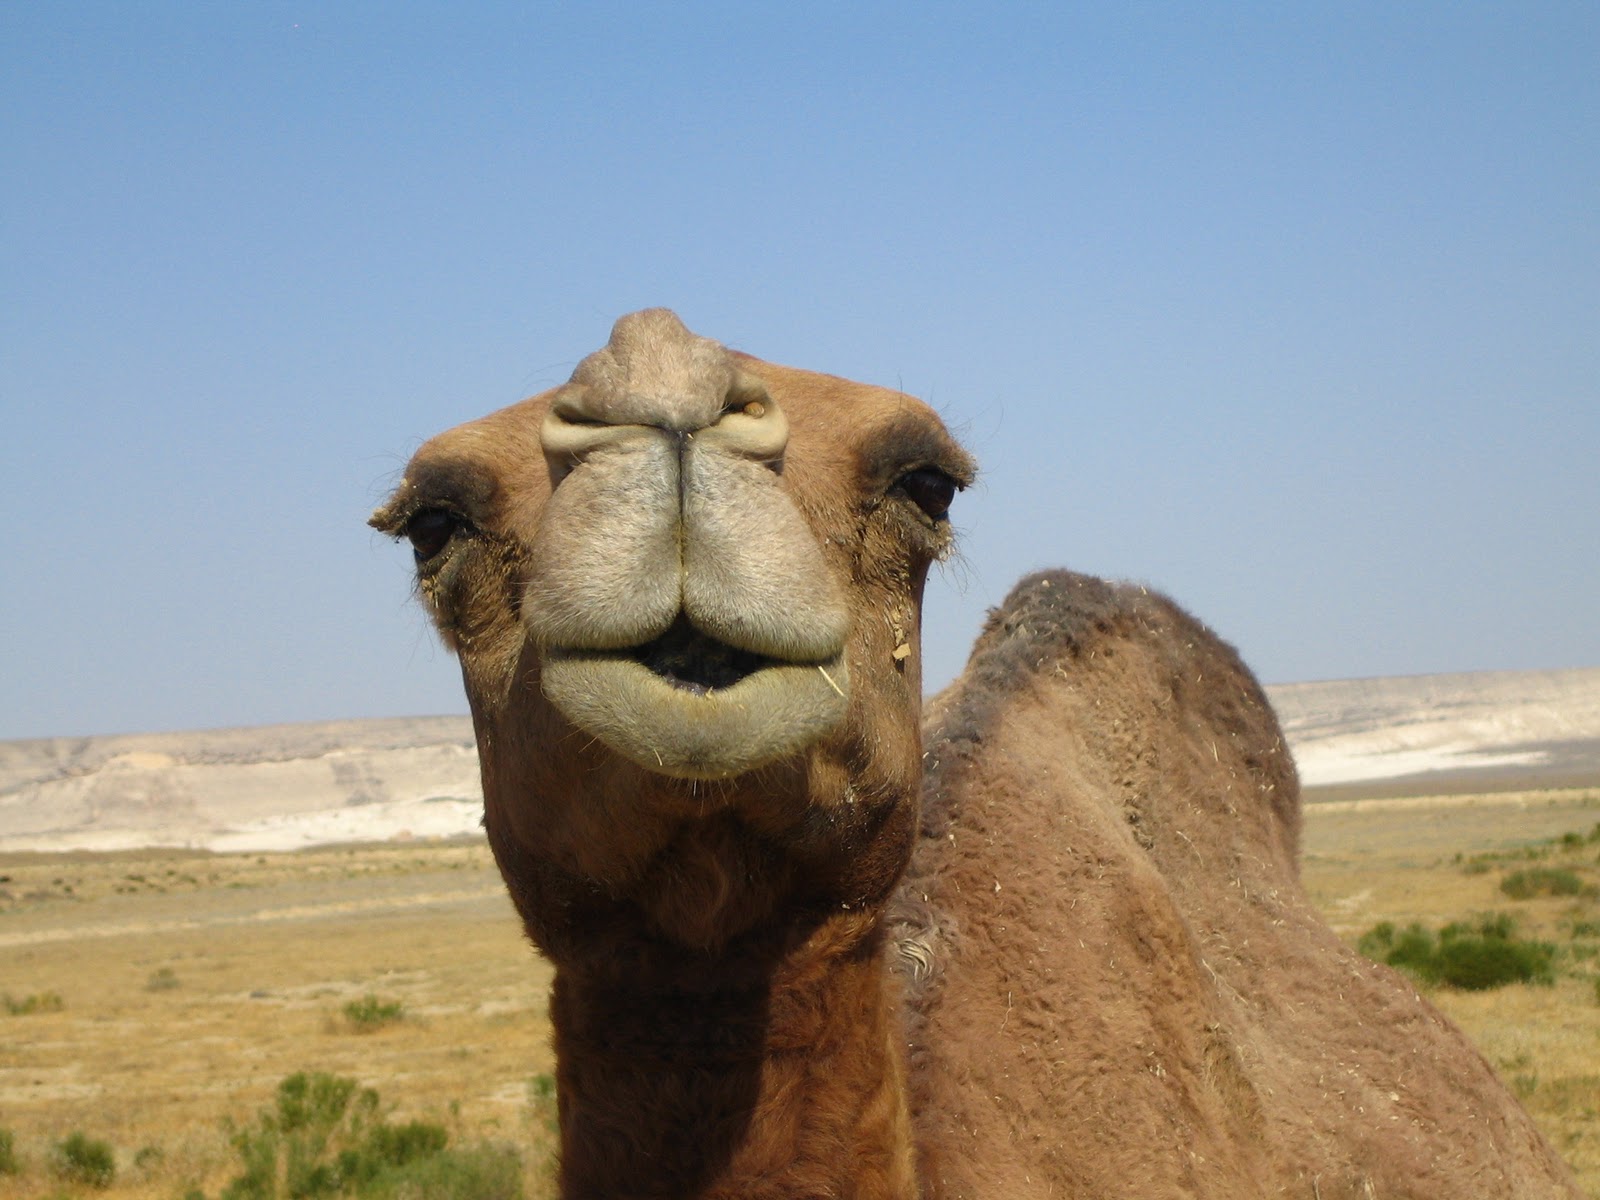 Hump Day Camels HD Wallpaper